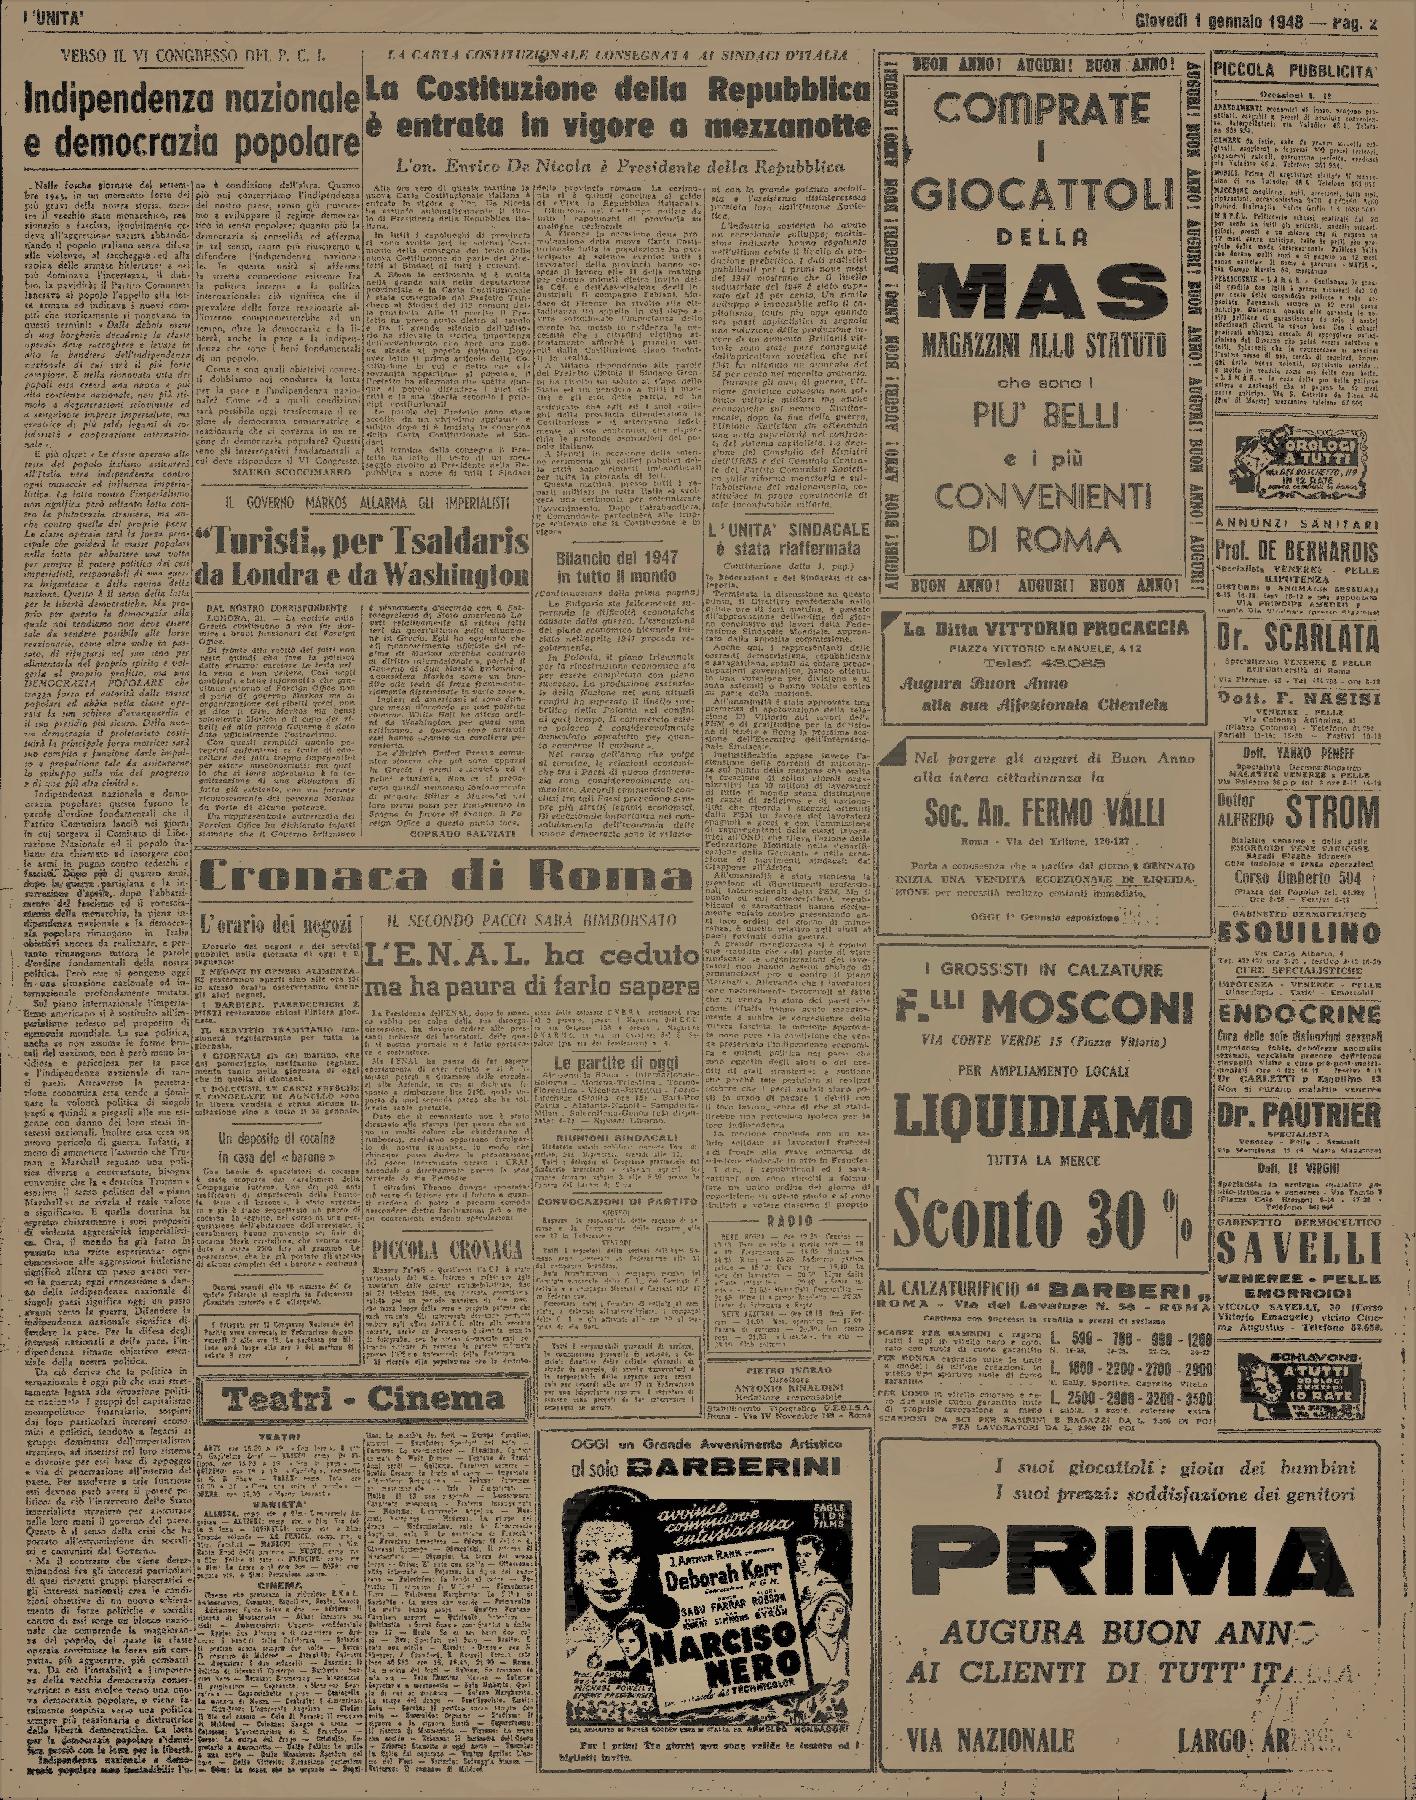 1° gennaio 1948 - Pagina del quotidiano "L'Unità".